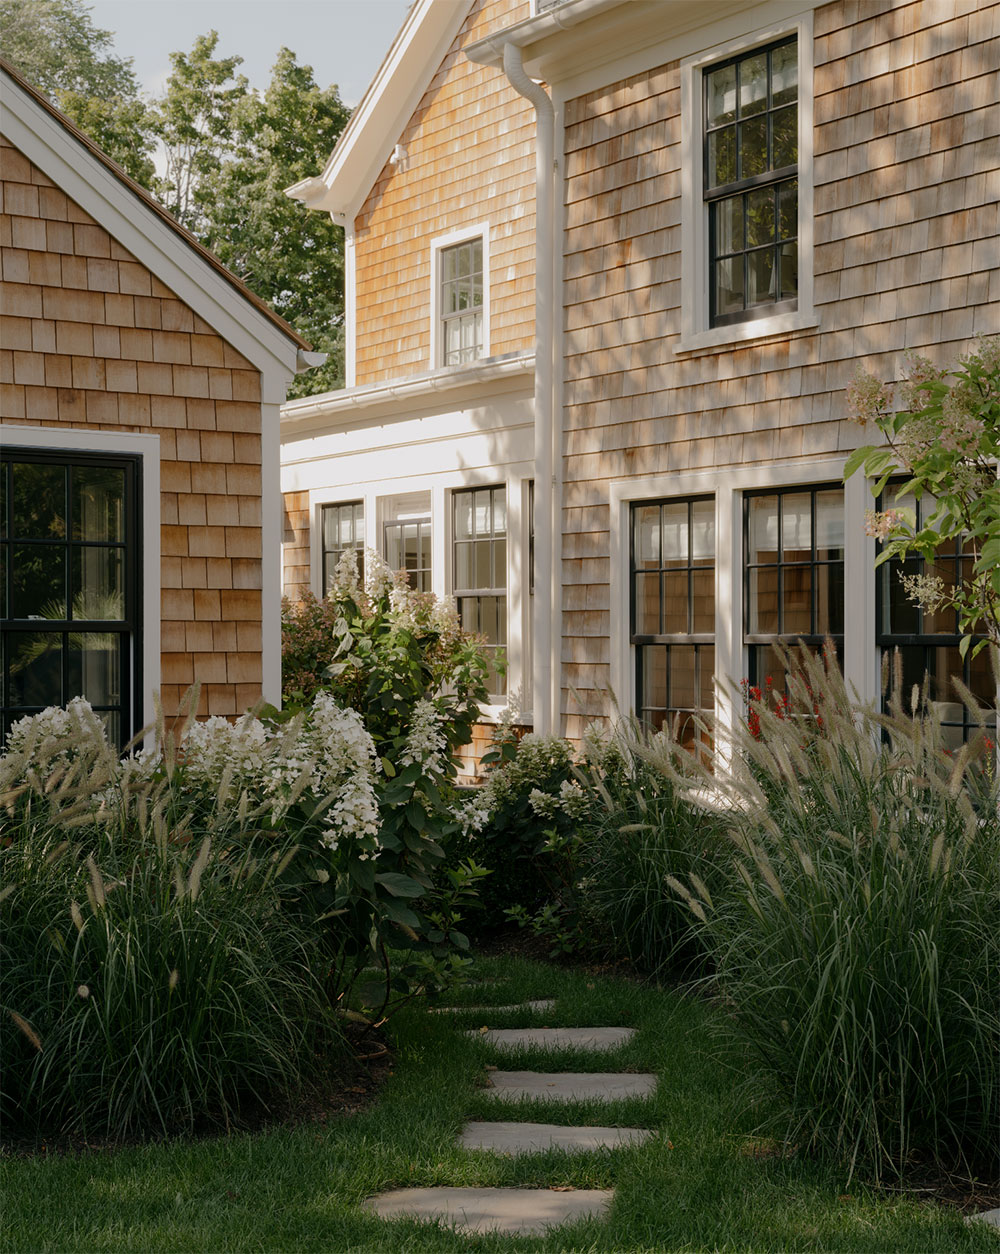 Дизайн вне времени и растения как часть интерьера: великолепный дом на Лонг-Айленде